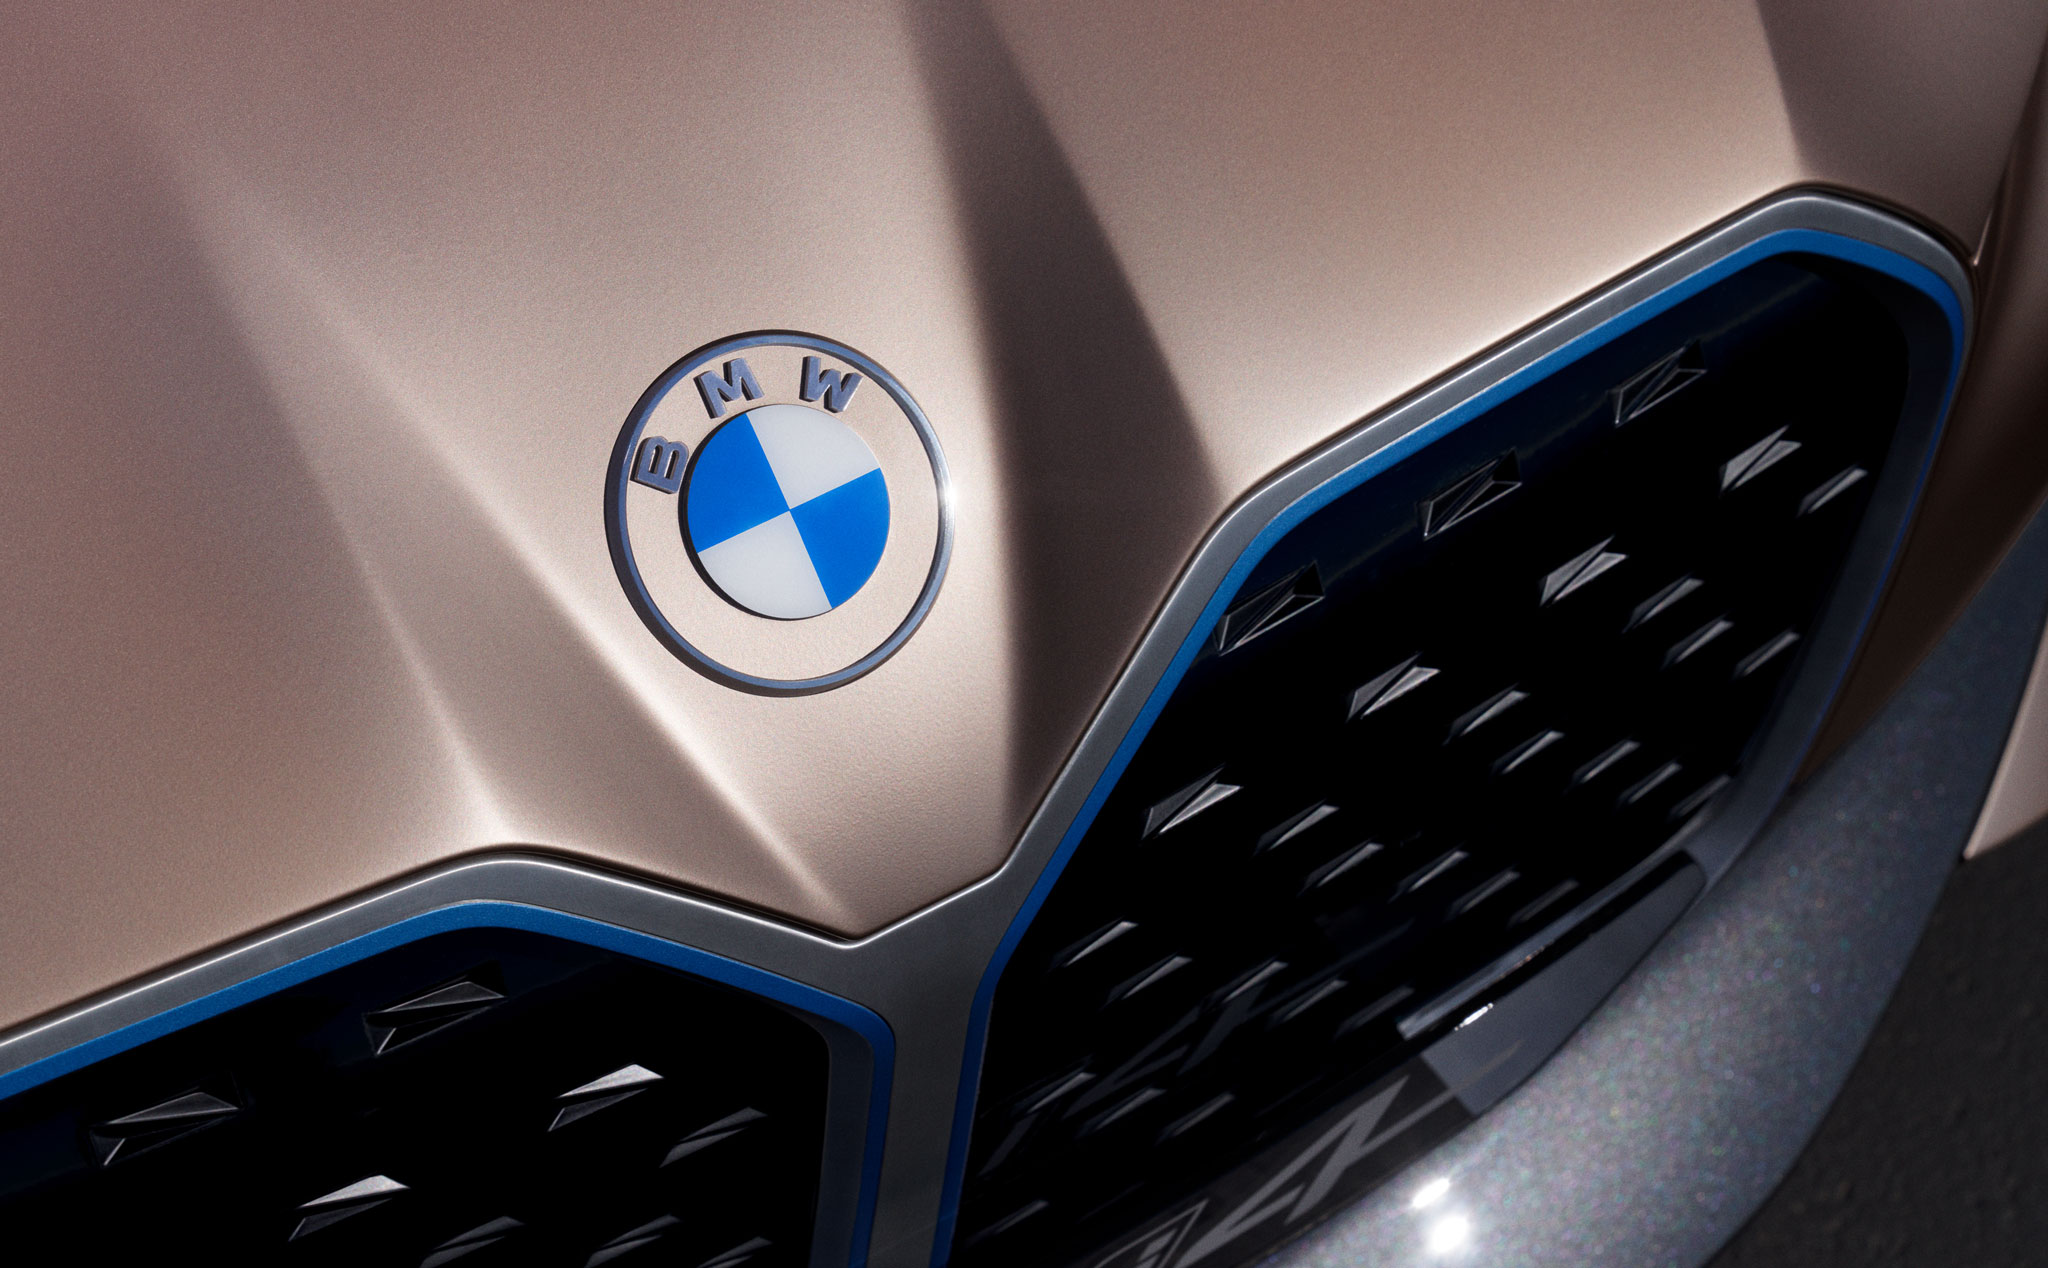 Câu chuyện về logo của BMW: hơn 100 năm hình thành và thay đổi